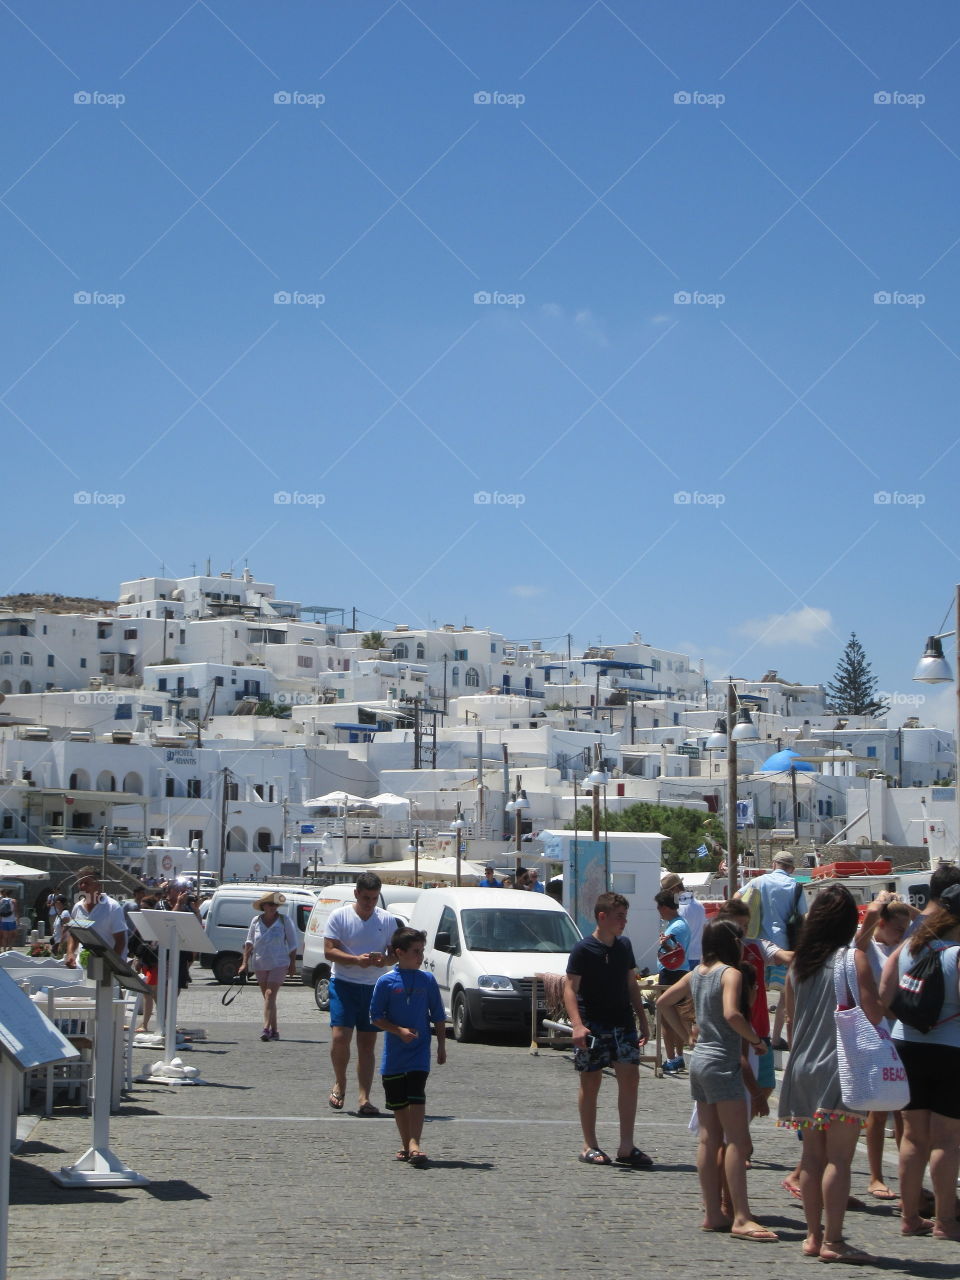 City square paros greece